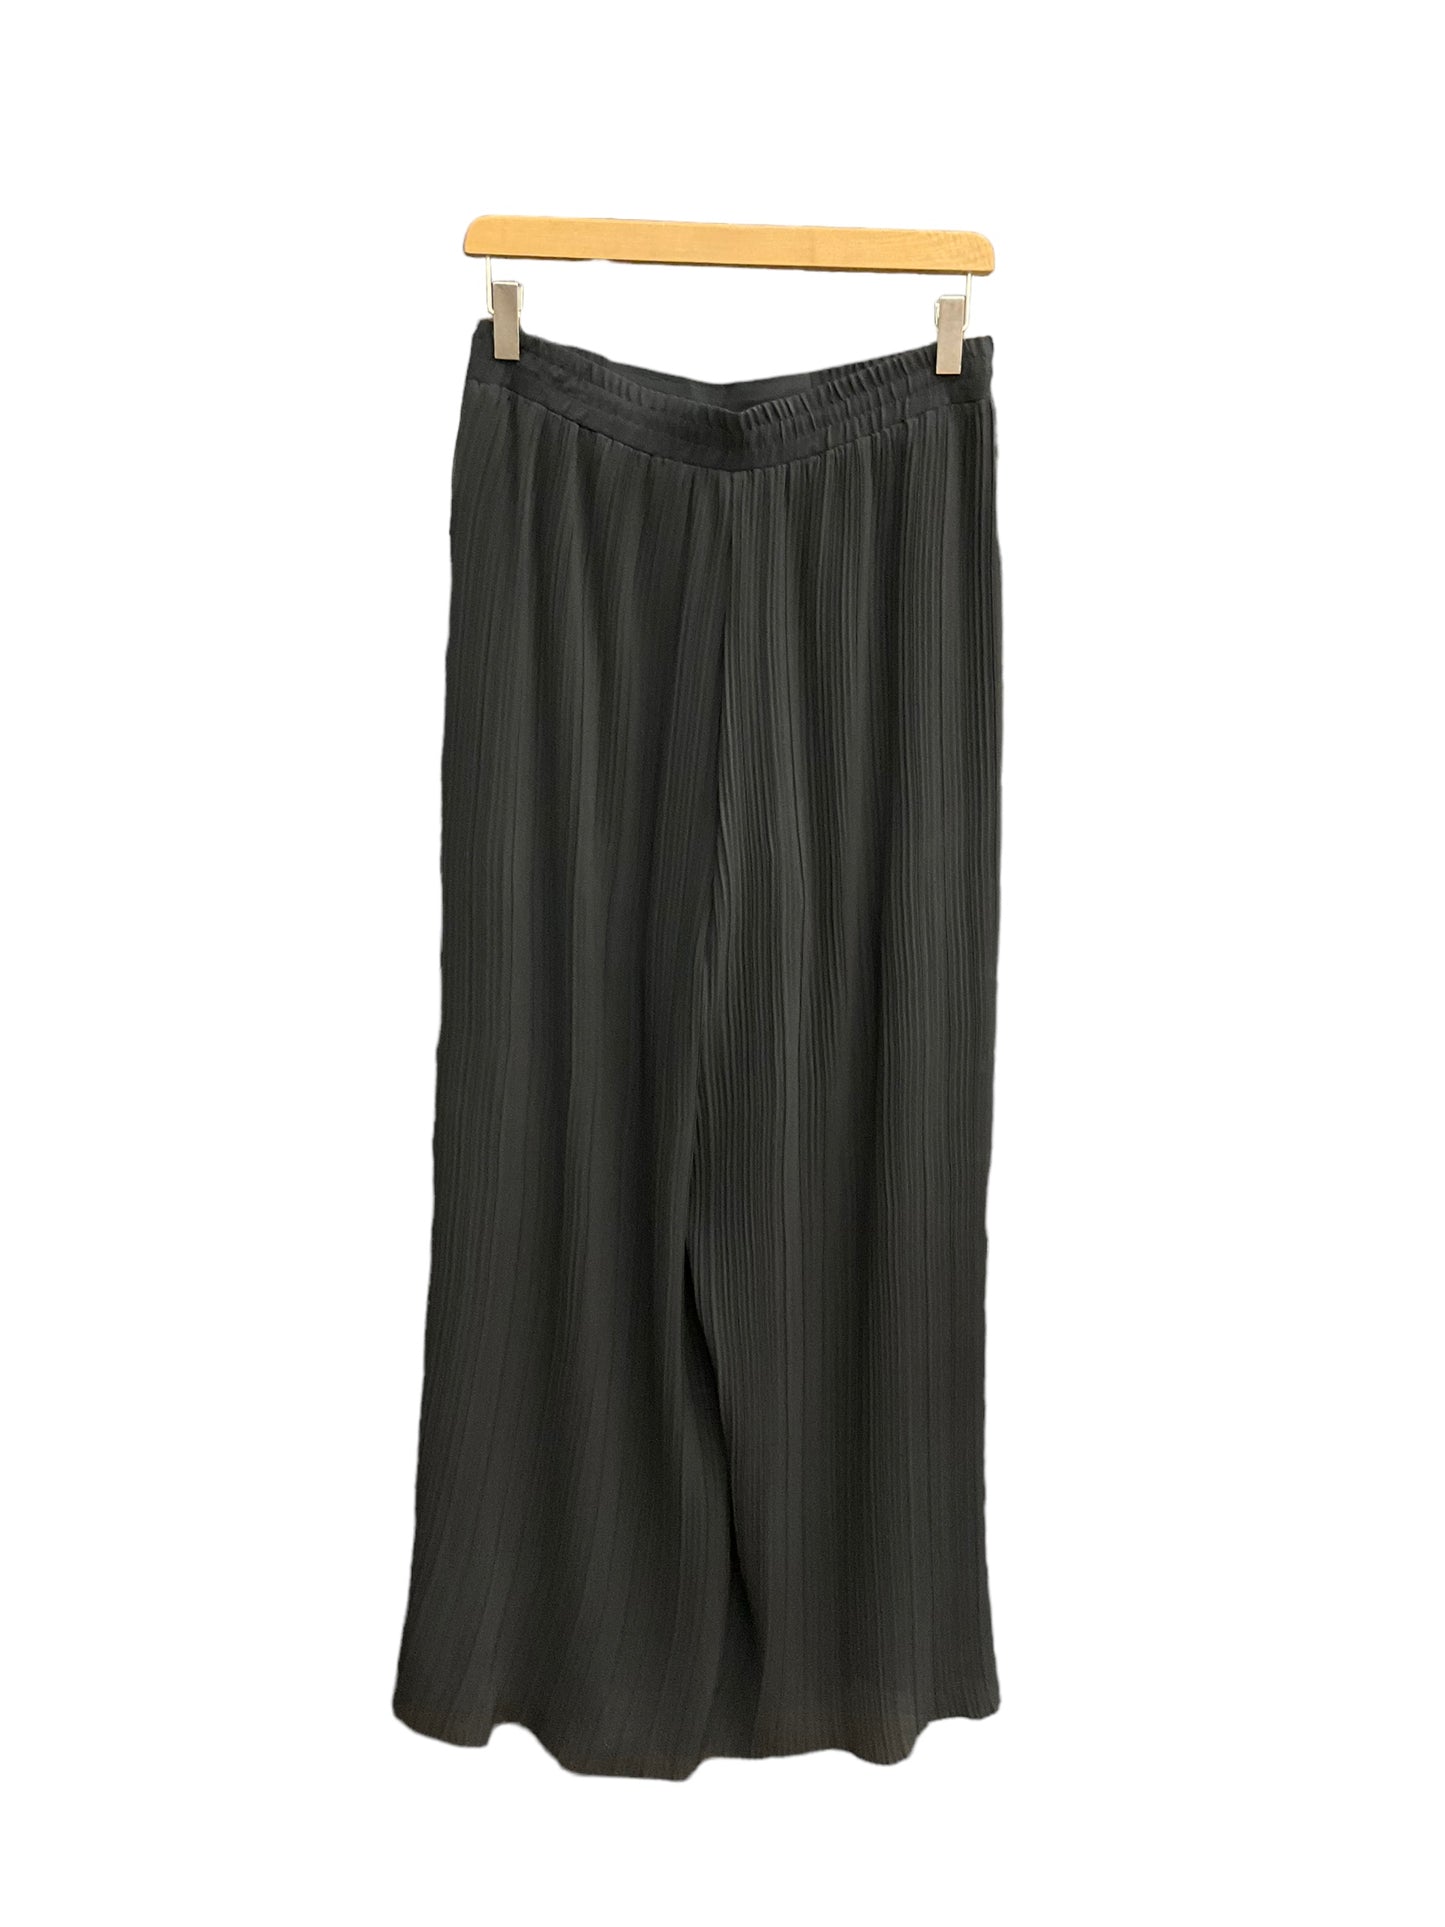 Pants Dress By Nanette By Nanette Lepore  Size: 6